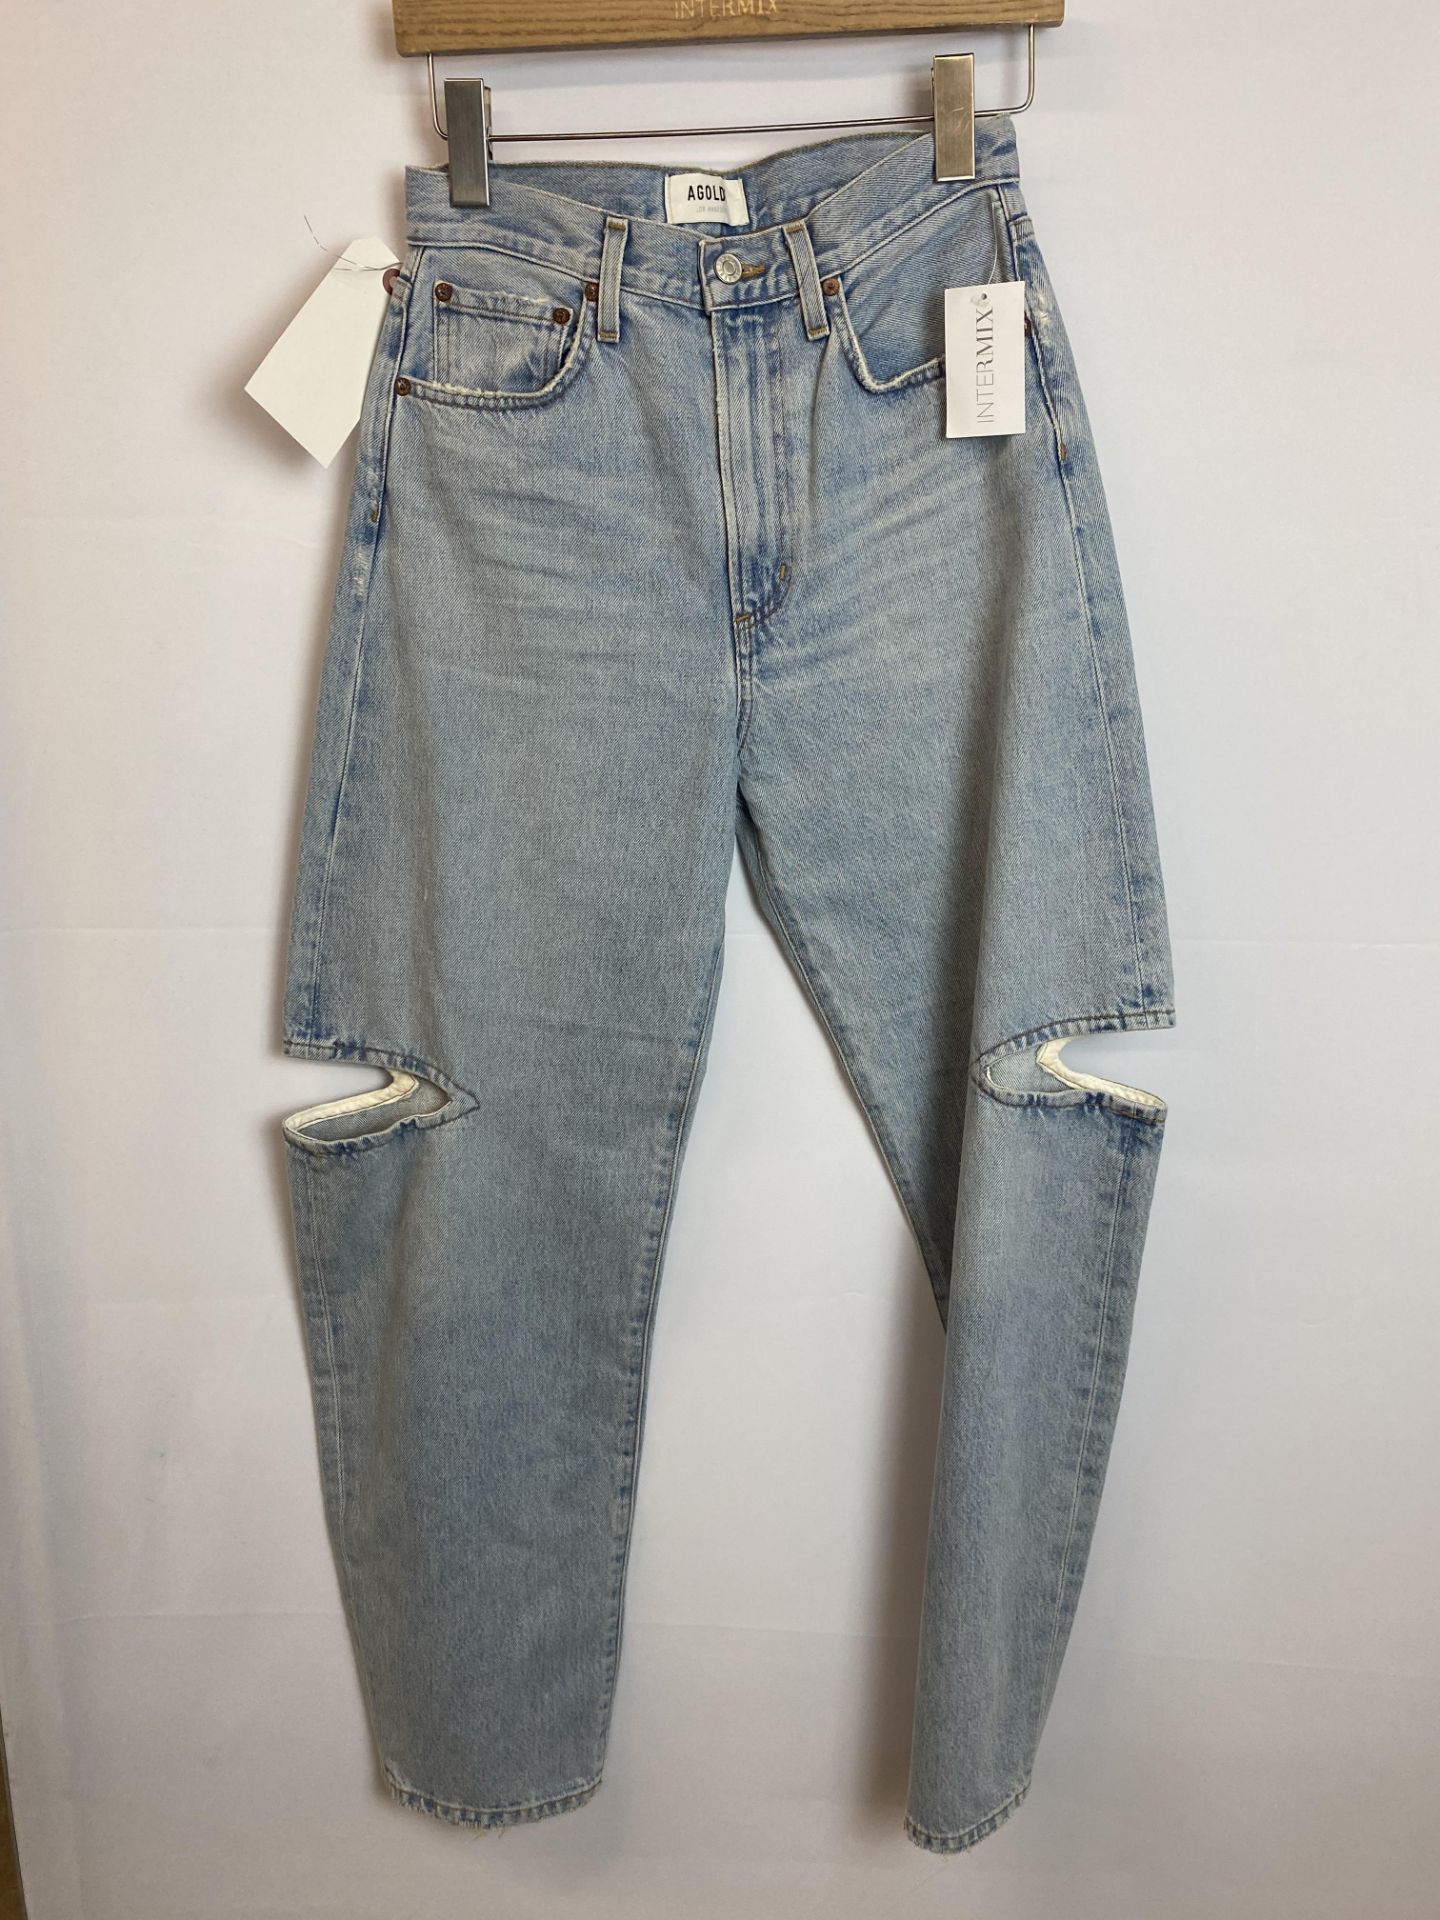 Agolde Denim LT Sarna in Sideline Jean, Size: 25, Original Retail Price: $248